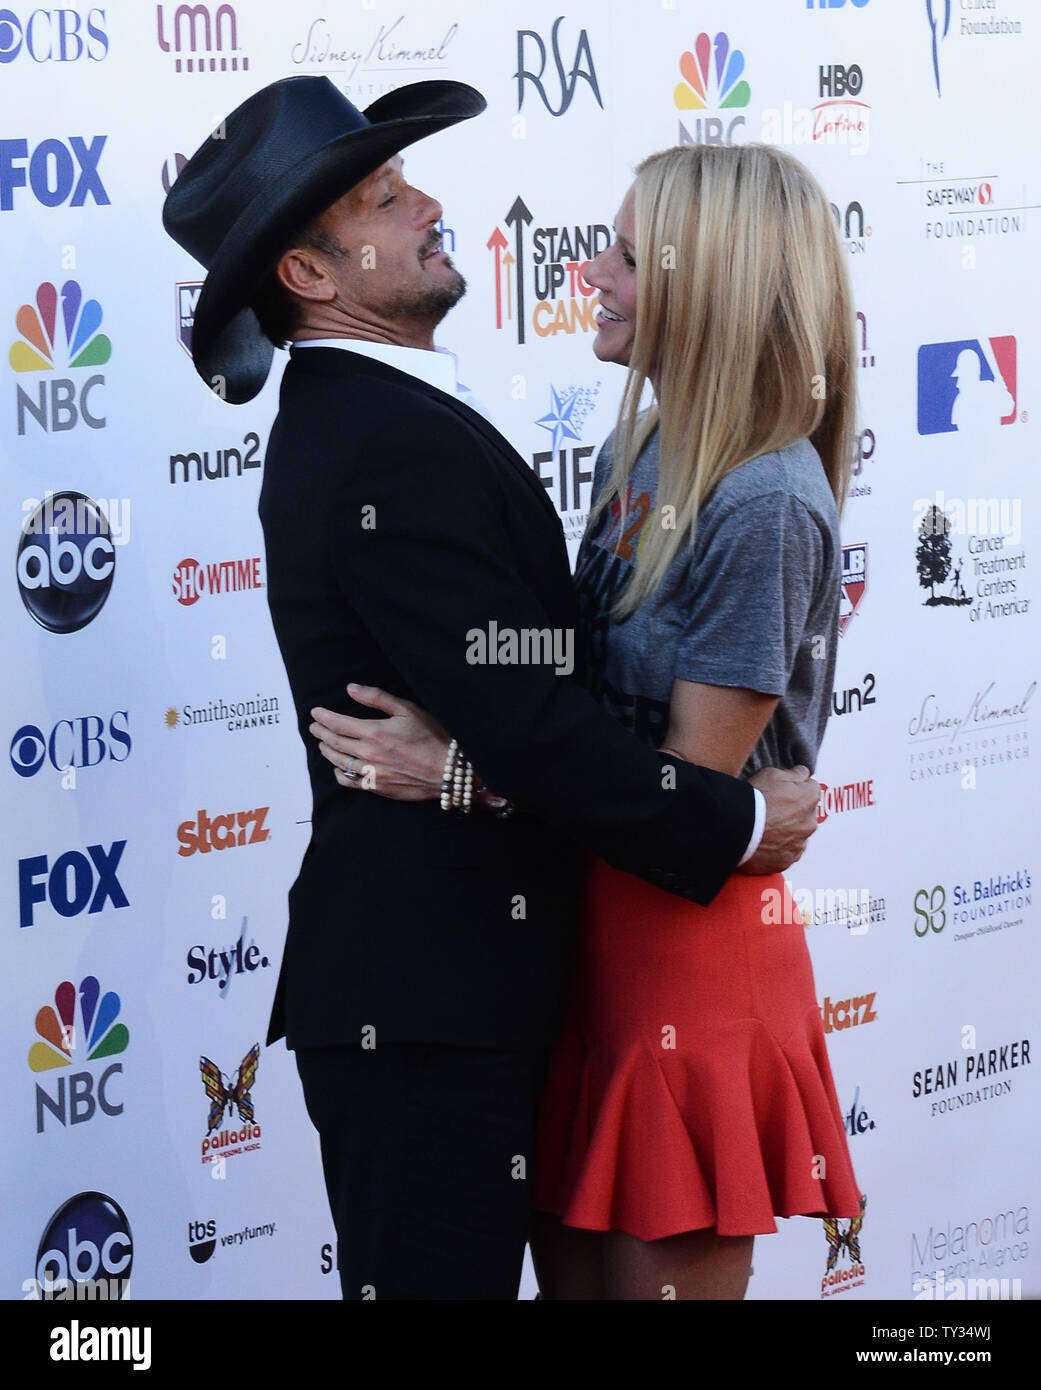 L'actrice Gwyneth Paltrow (R) et le chanteur Tim McGraw assister à l'émission télévisée Stand Up to Cancer évènement de collecte de fonds de l'industrie du divertissement Foundation (EIF) au Shrine Auditorium à Los Angeles le 7 septembre 2012. UPI/Jim Ruymen Banque D'Images